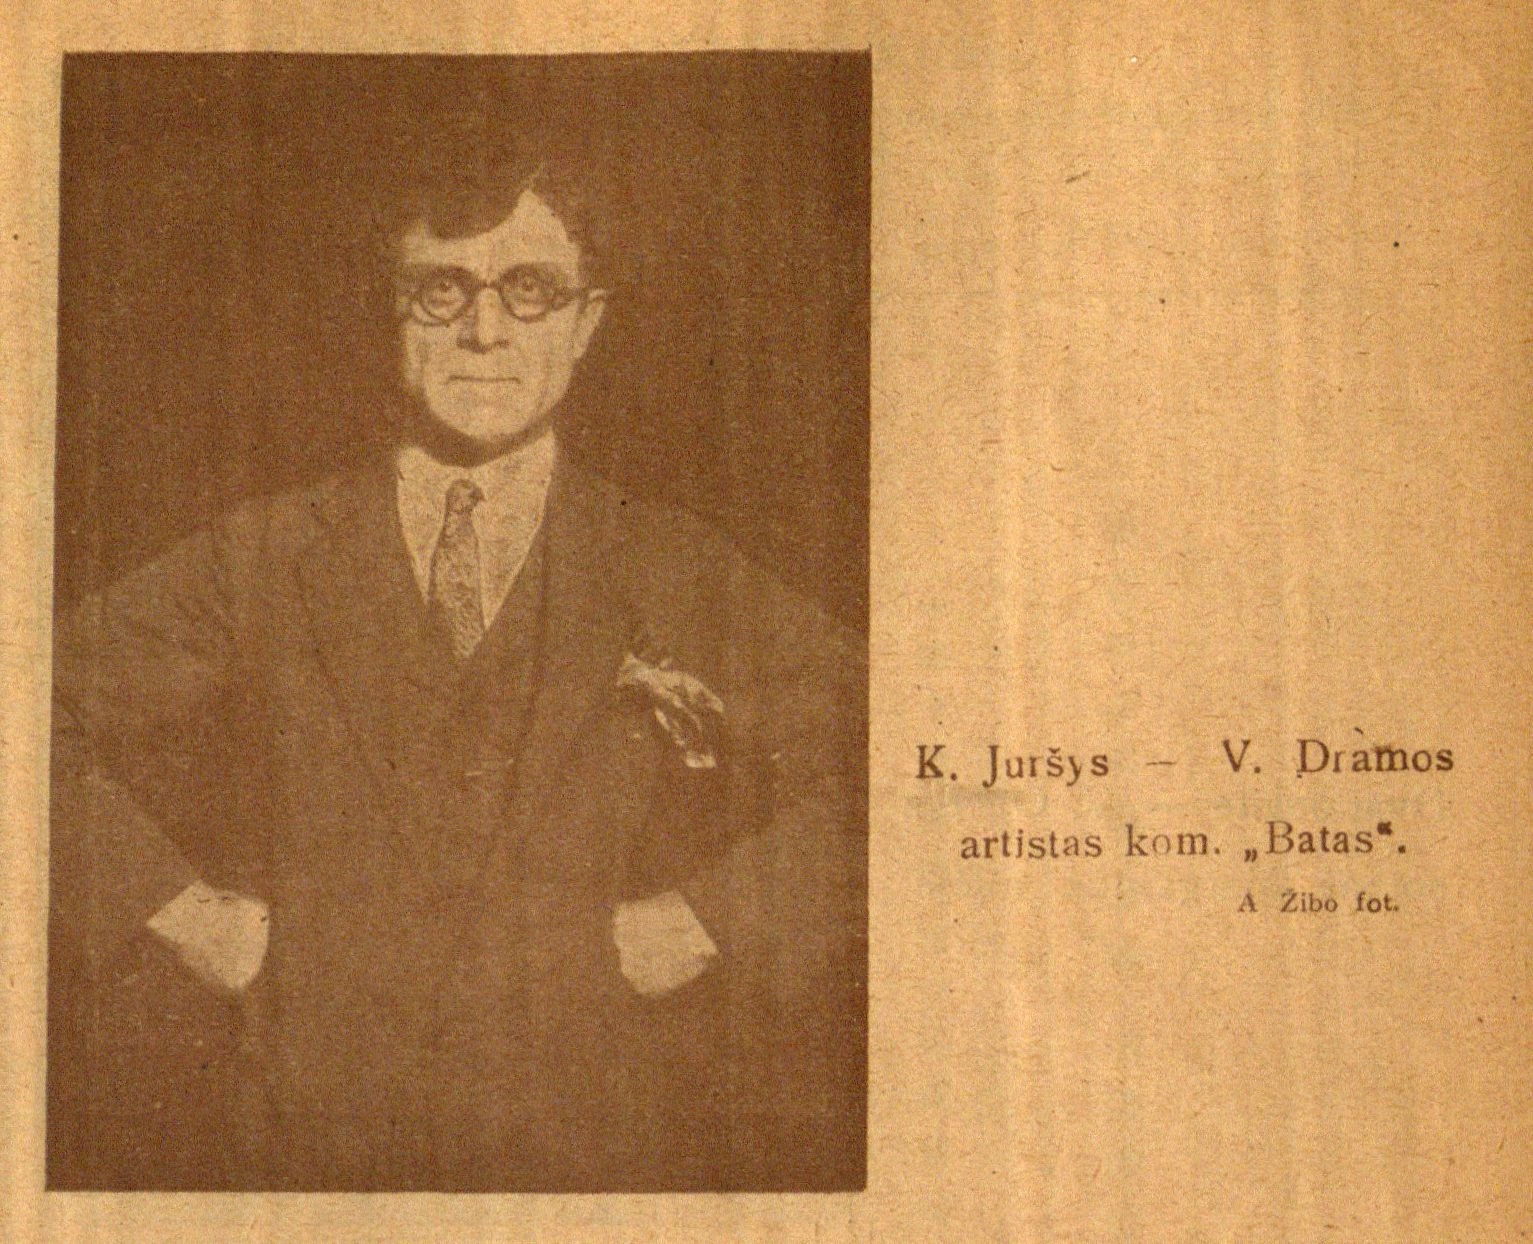 K. Juršys – V. Dramos artistas kom. „Batas“: A. Žibo fot. // 7 meno dienos. – 1928, Nr. 12, p. 6.